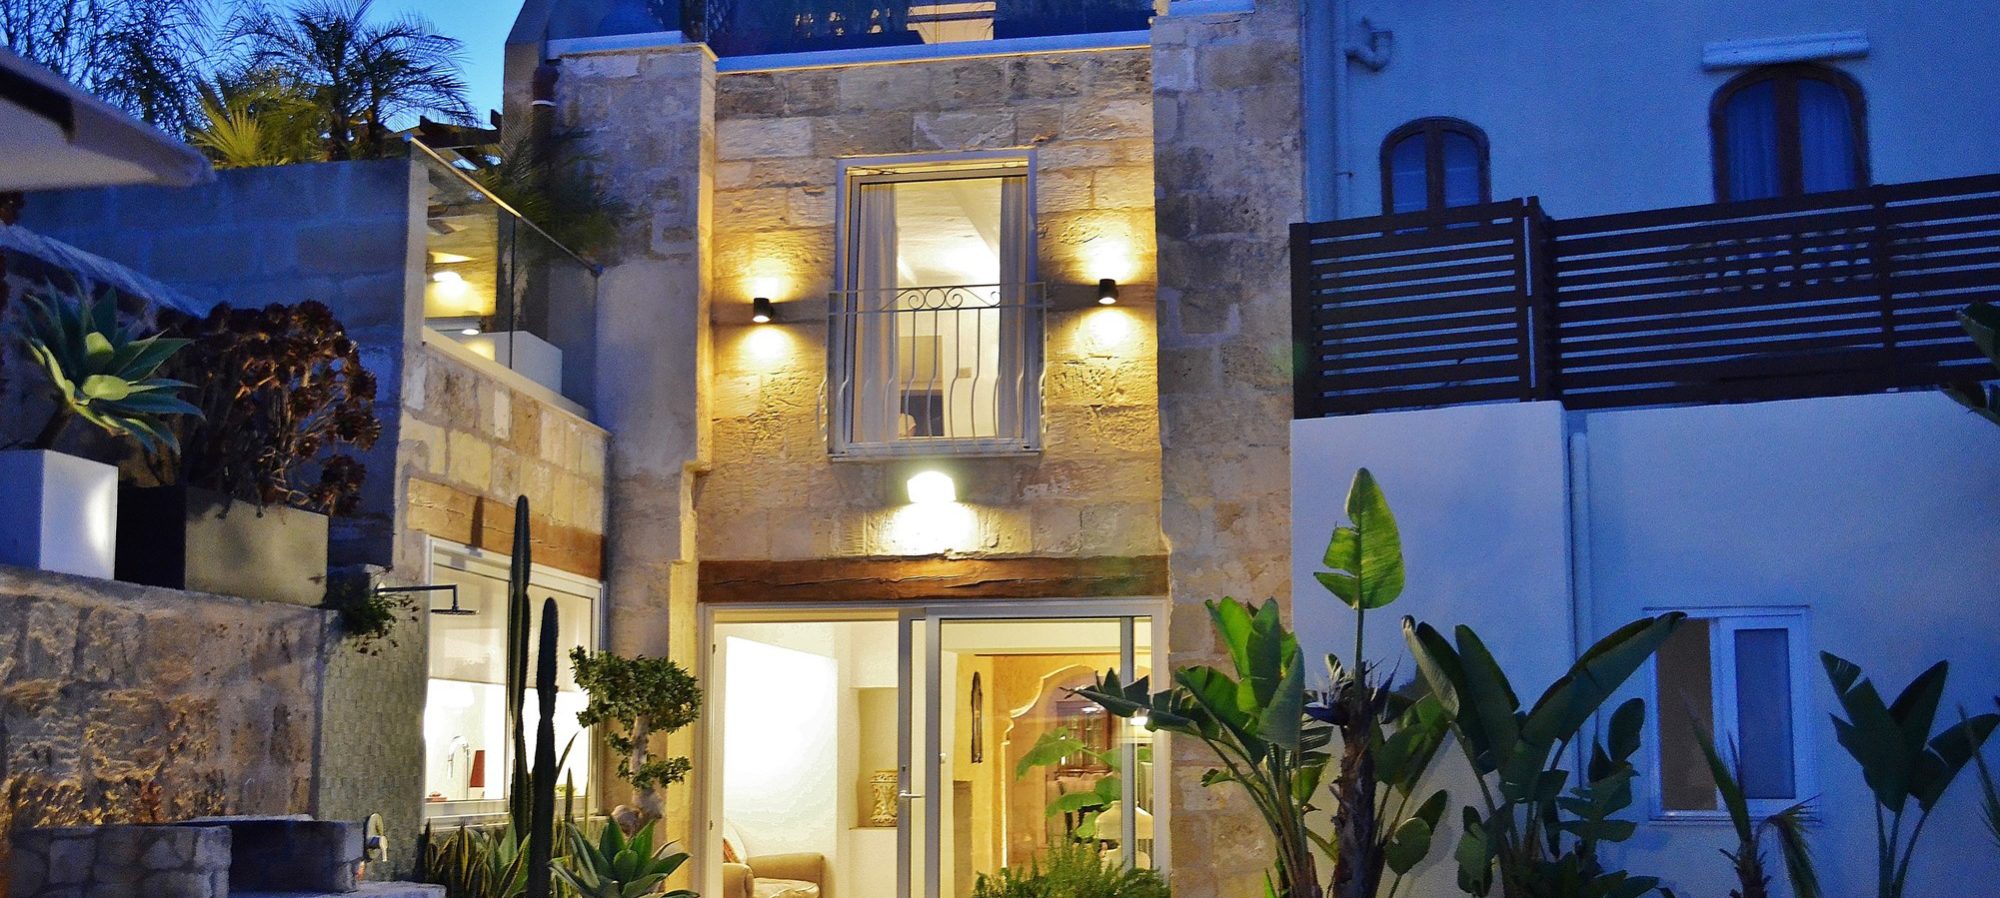 Malta & Gozo Property